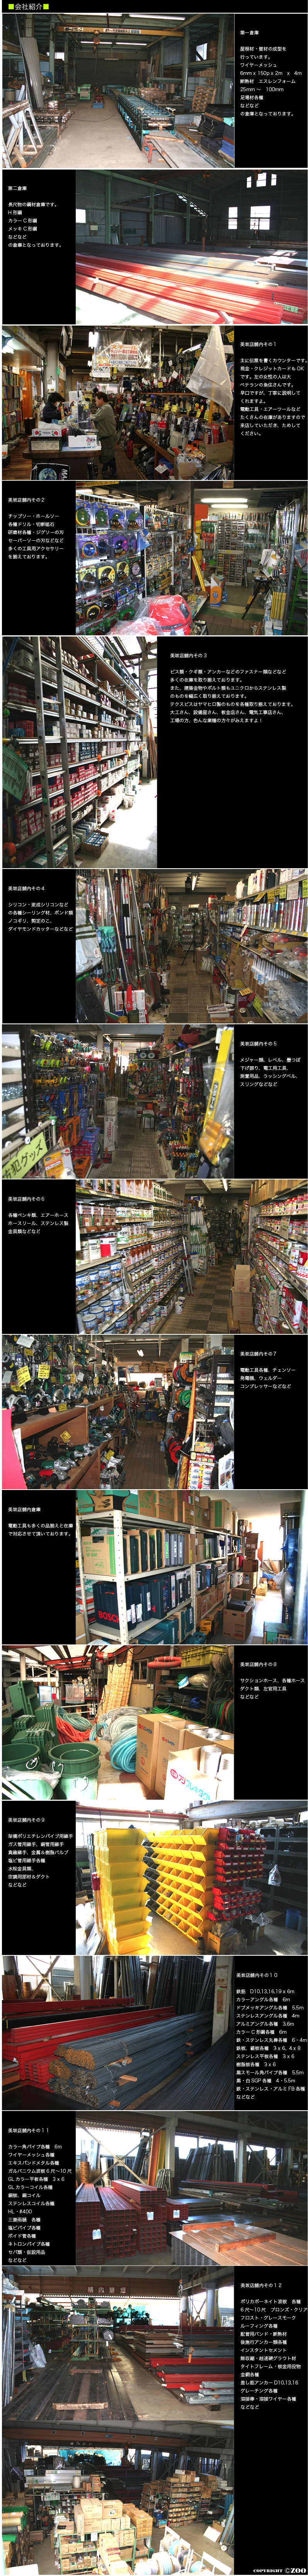 美坂の会社紹介と店舗内写真、倉庫